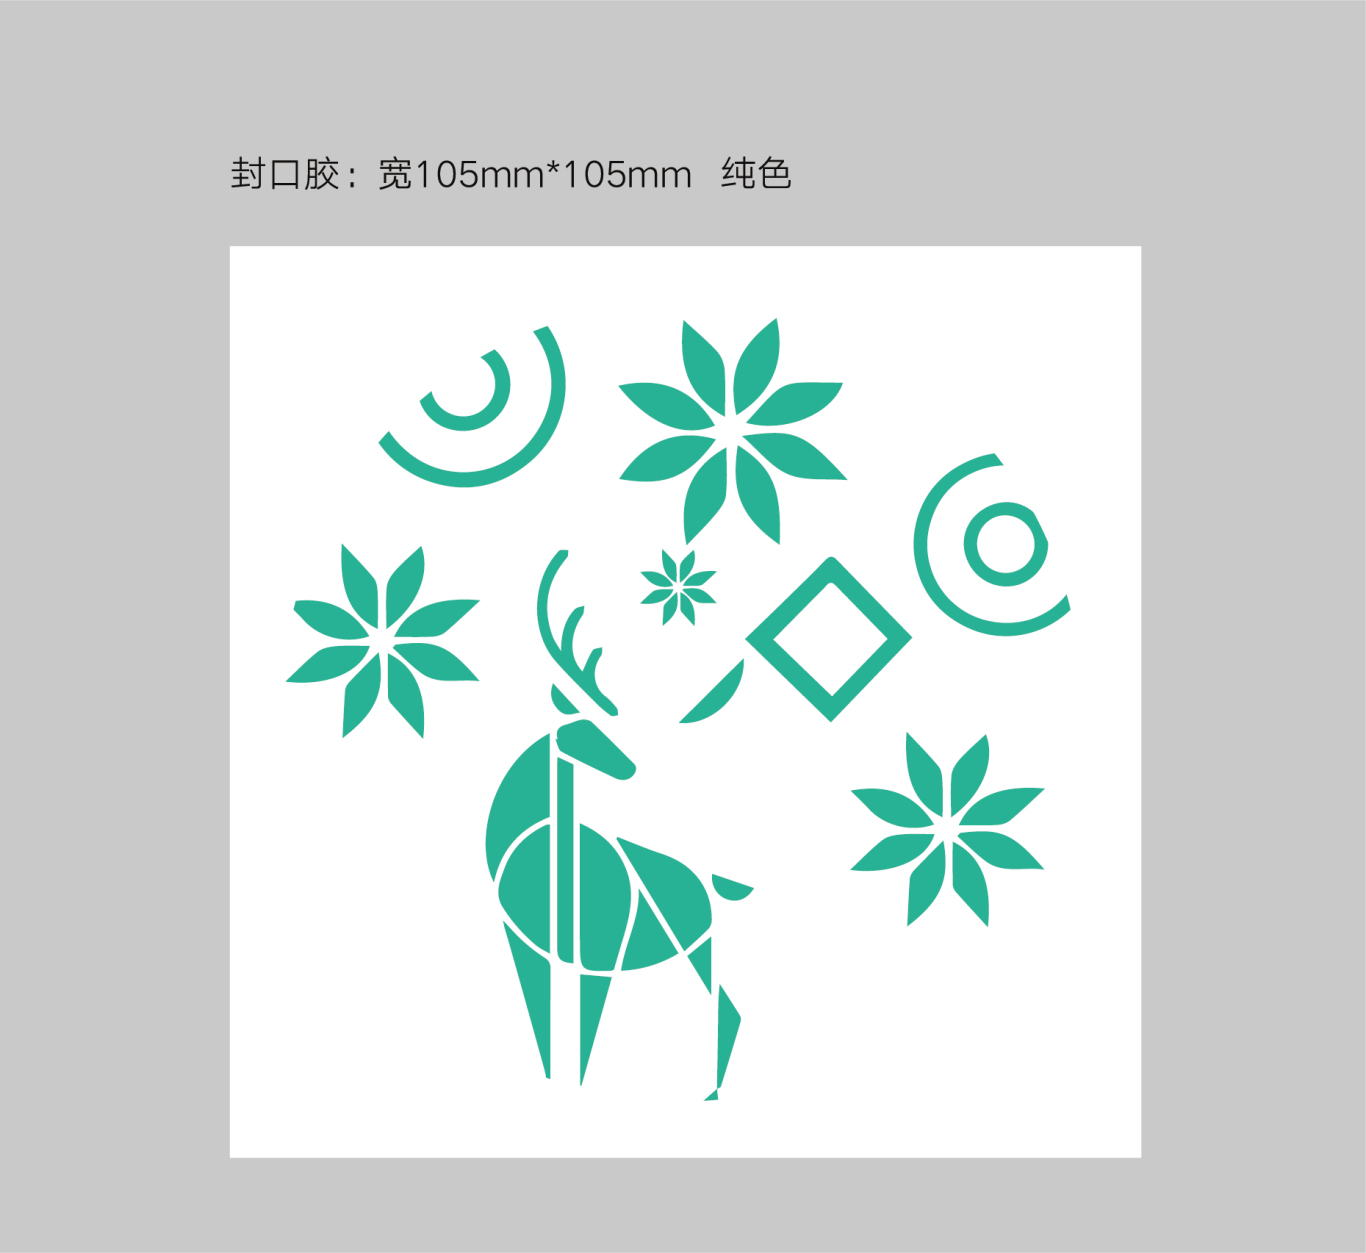 清舞飘雪茶饮 logo设计及吉祥物设计图16